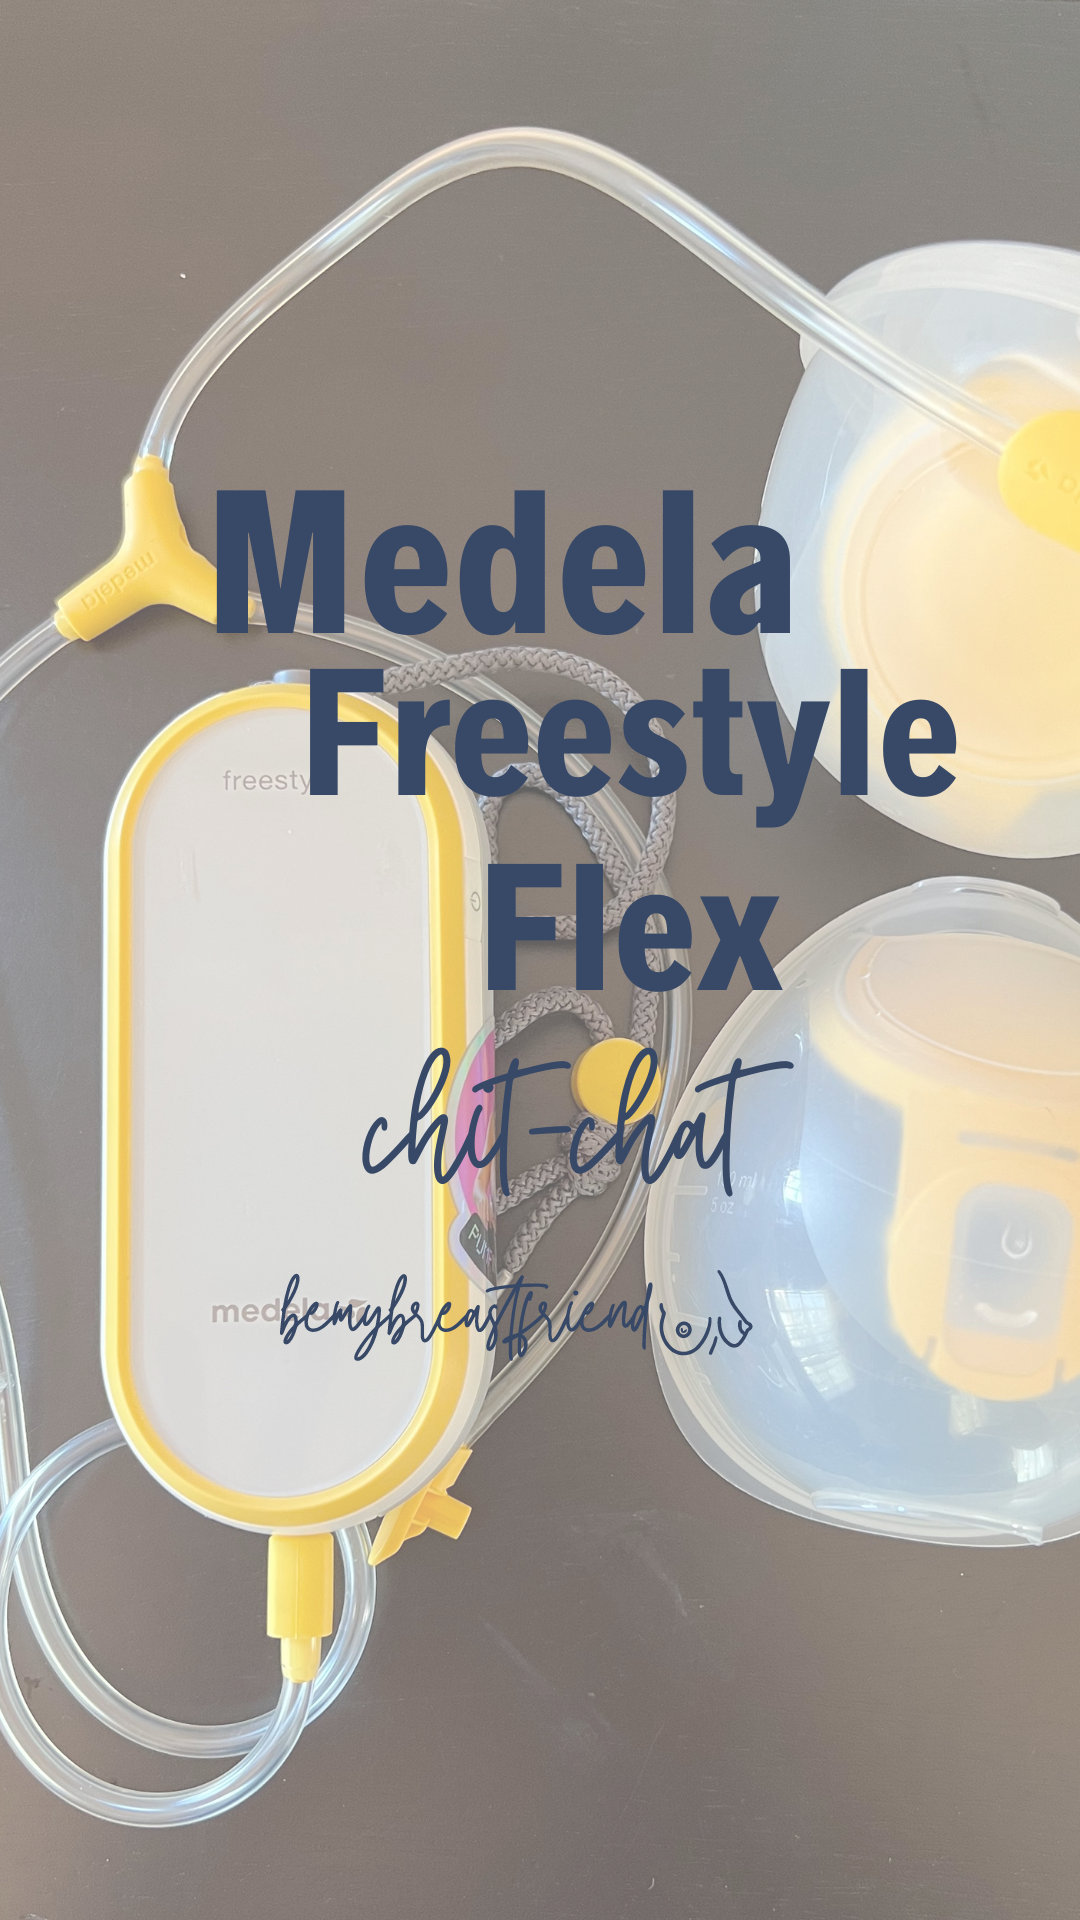 Medela Freestyle Flex Chit-Chat